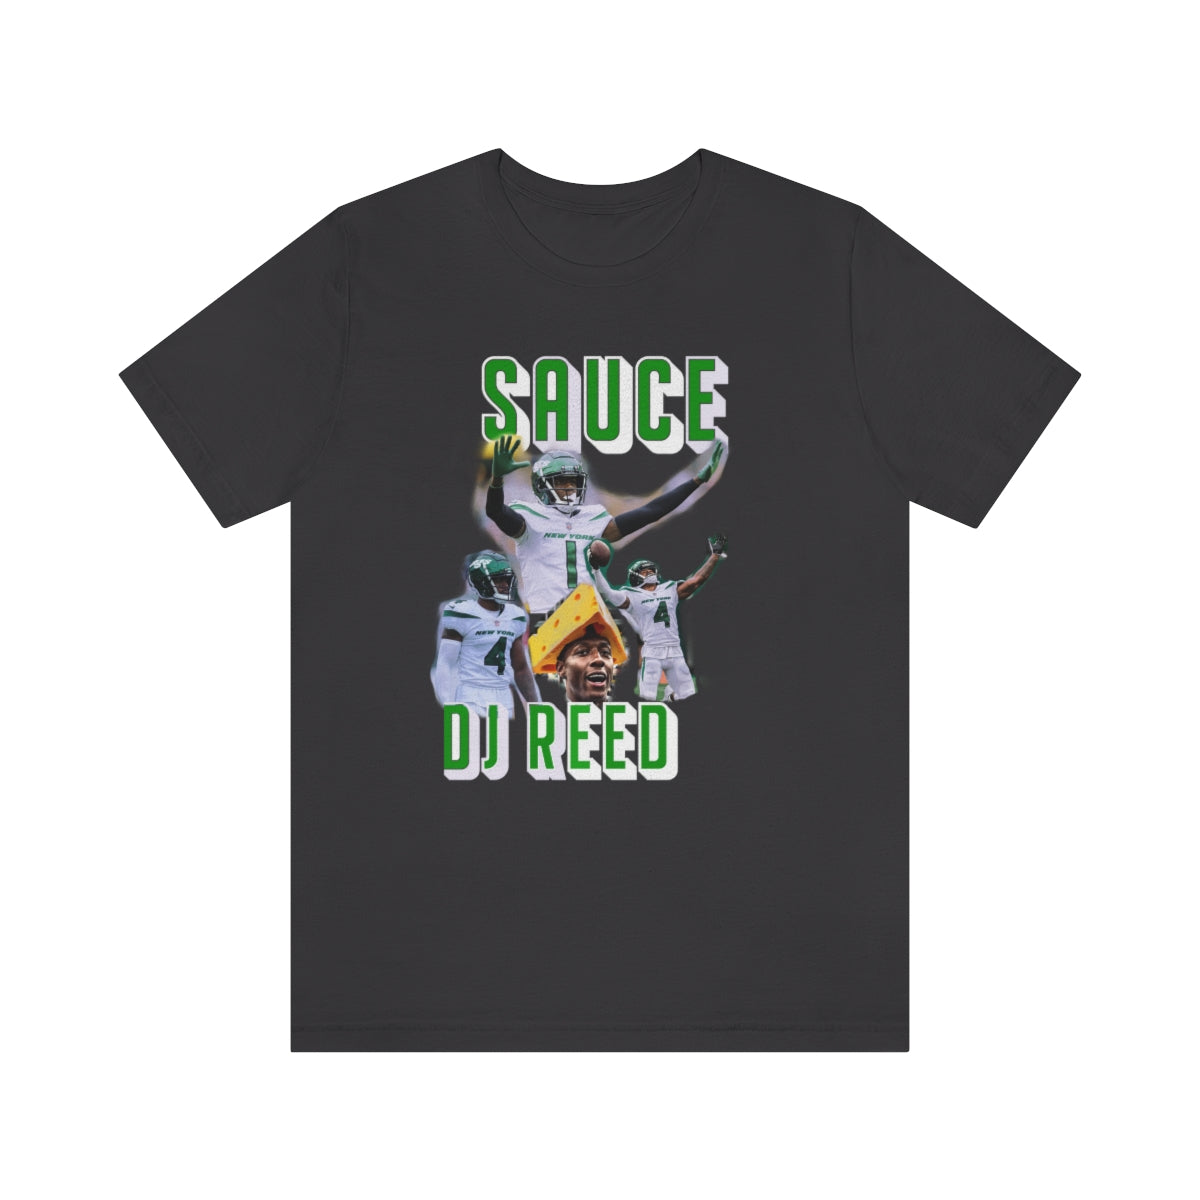 Sauce DJ Reed Vintage Short Sleeve Tee - IsGoodBrand